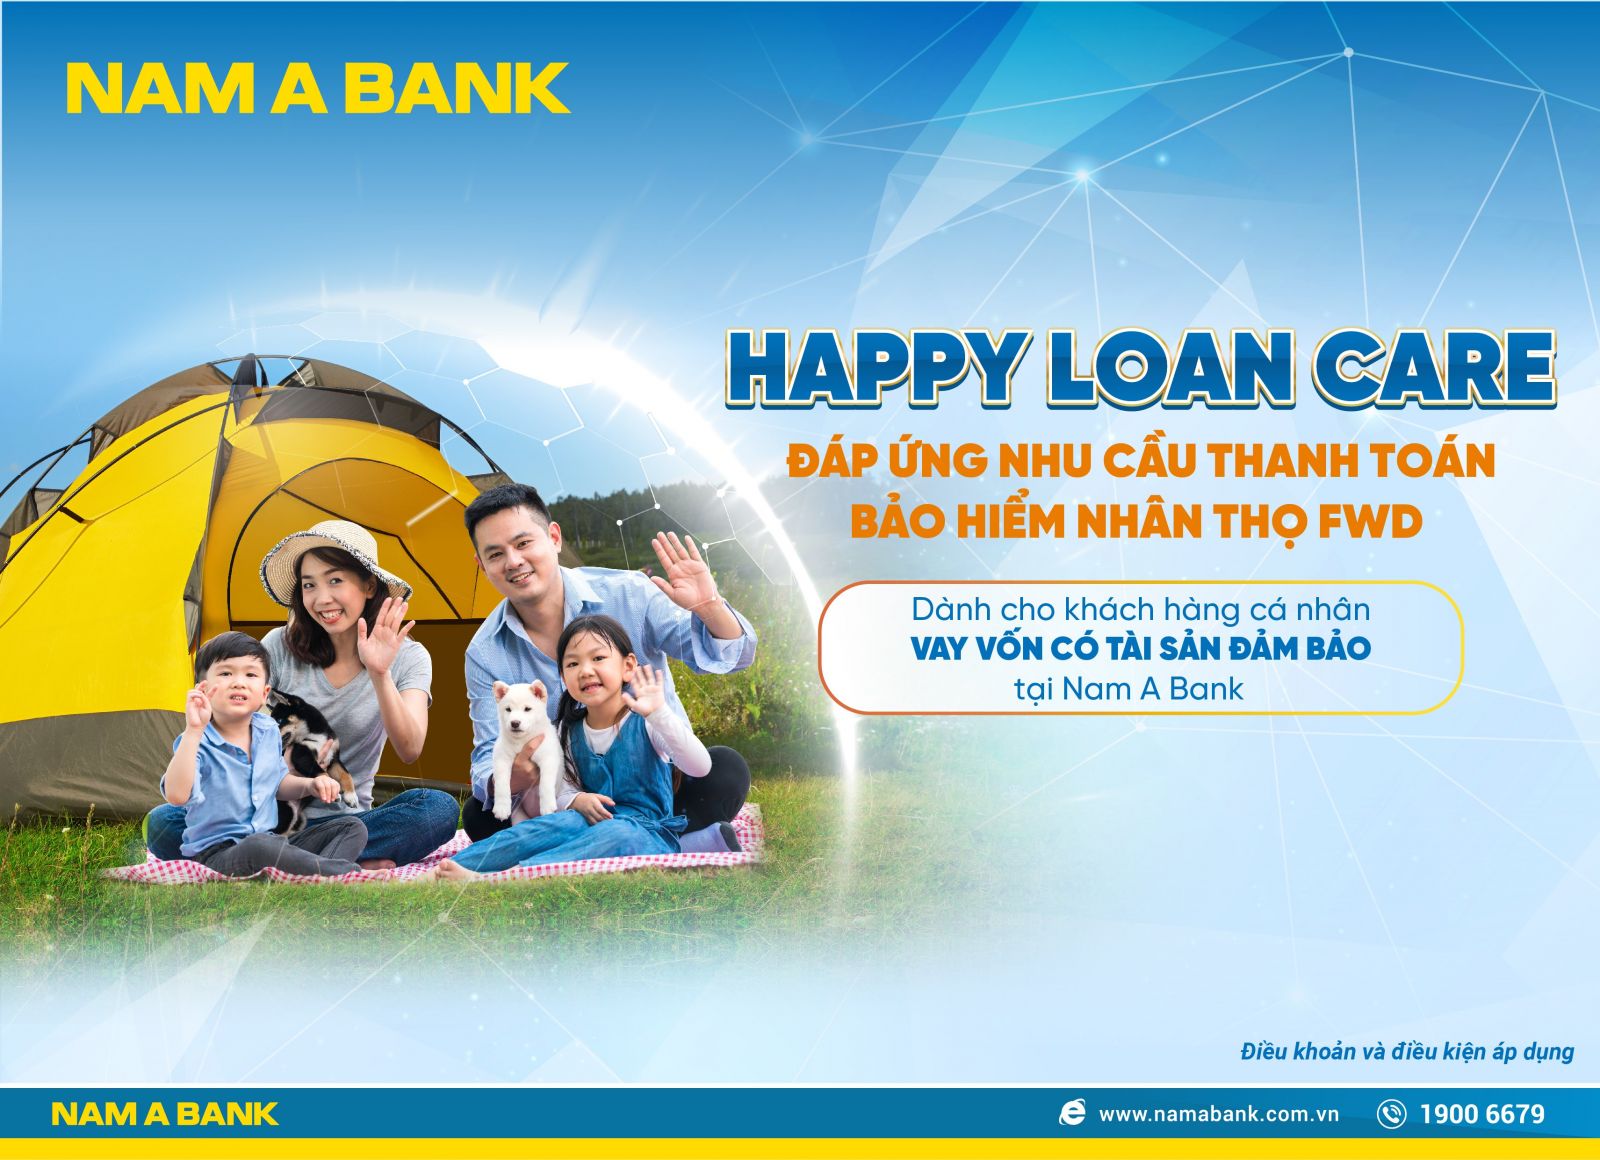 Chương trình “Happy Loan Care” – Nam A Bank đáp ứng nhu cầu thanh toán  bảo hiểm nhân thọ FWD cho khách hàng.